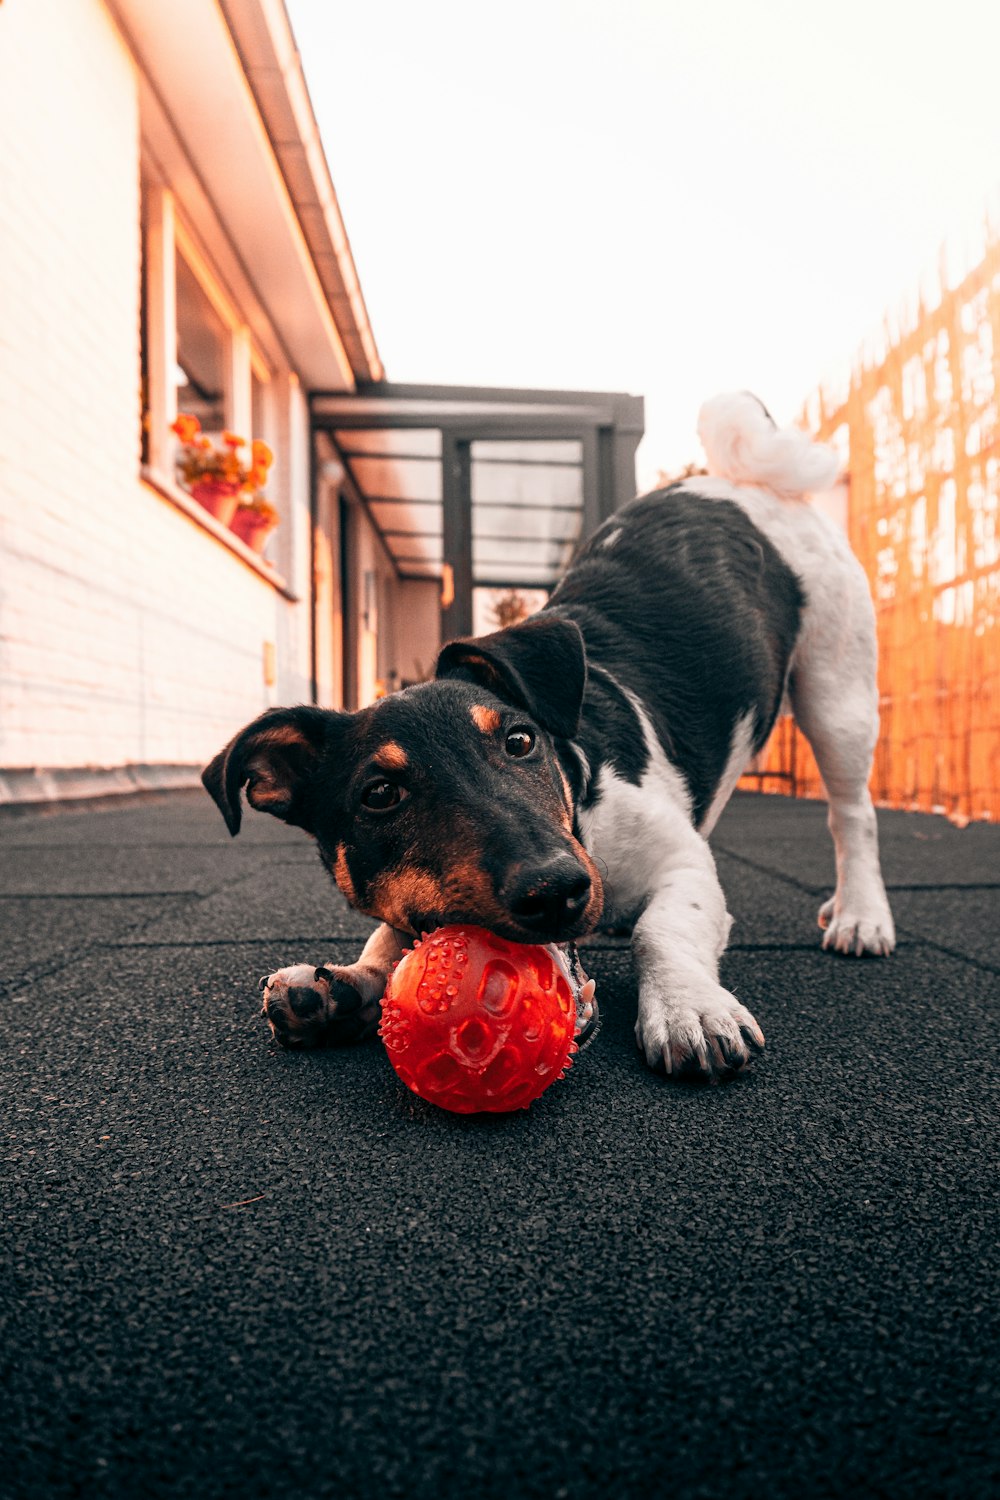 chien à poil court noir et blanc jouant à la balle rouge sur tapis noir